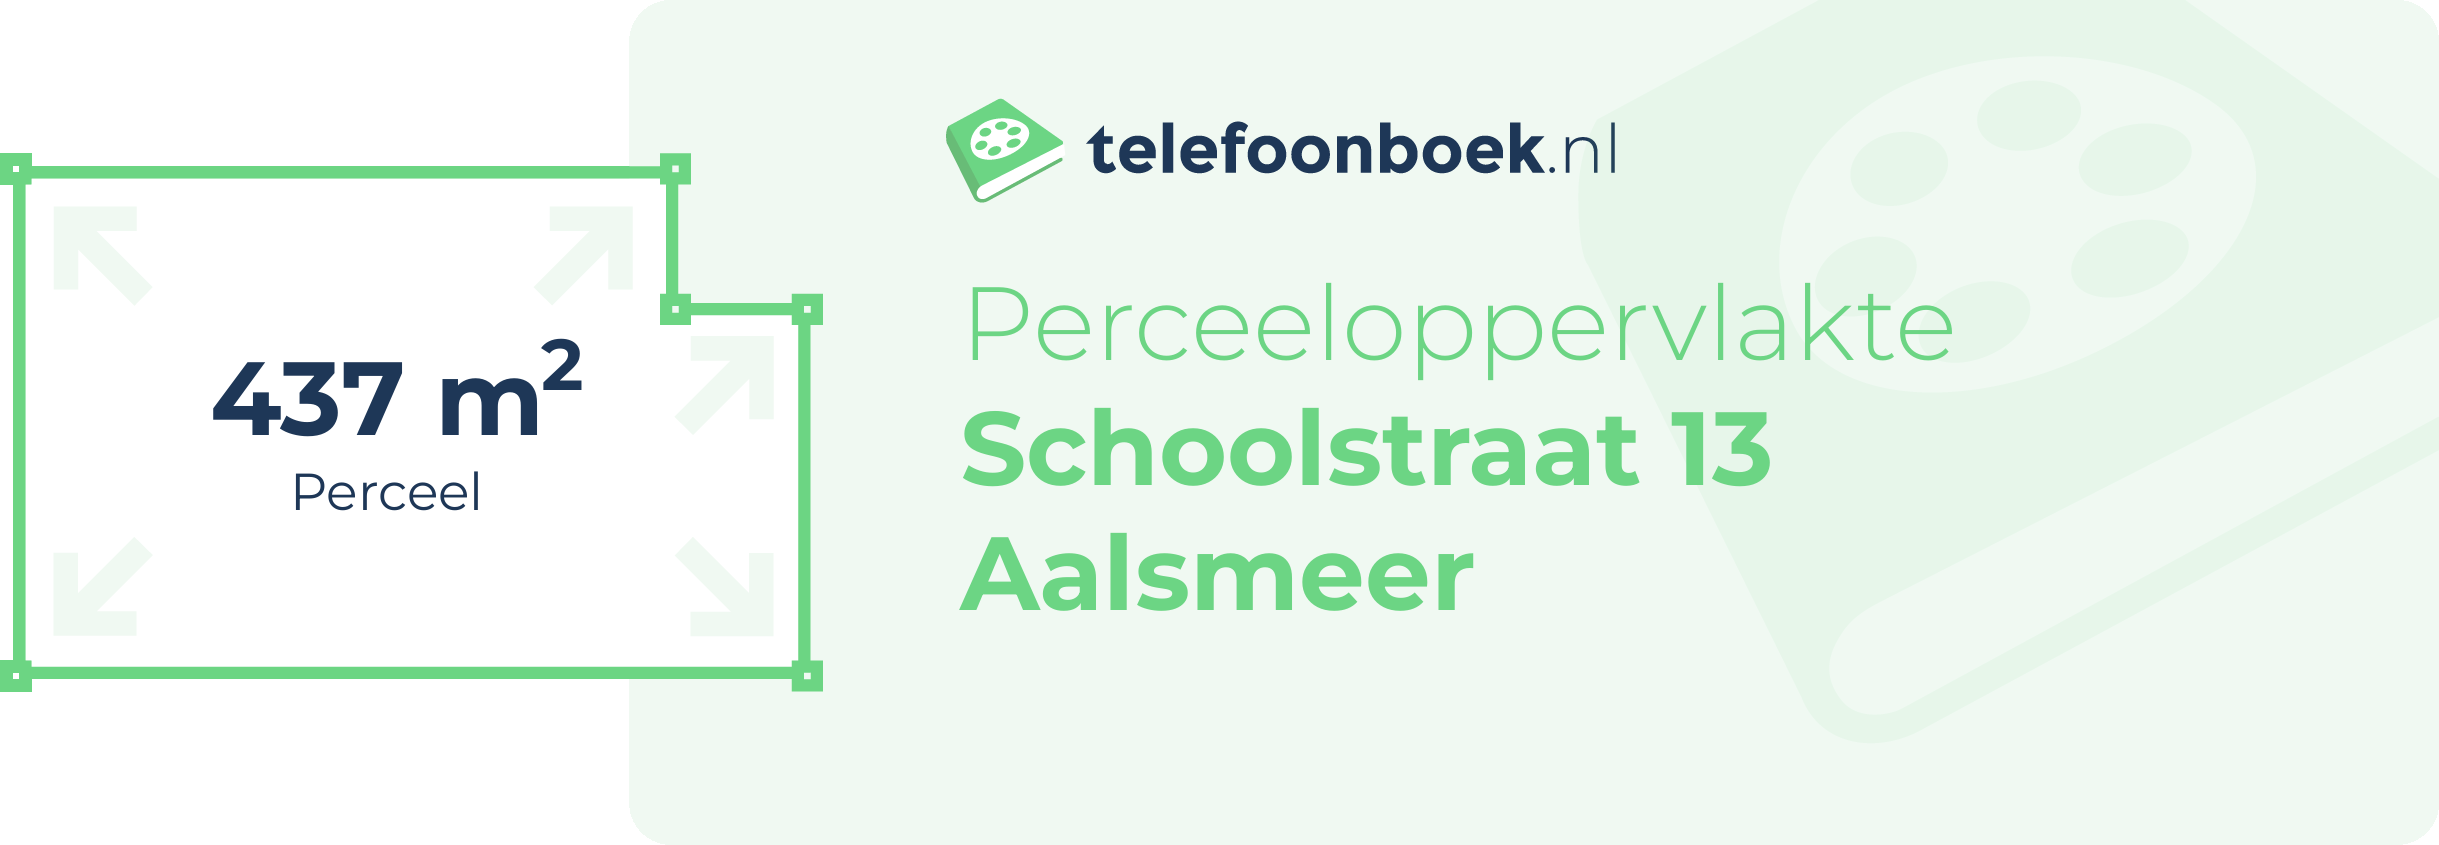 Perceeloppervlakte Schoolstraat 13 Aalsmeer